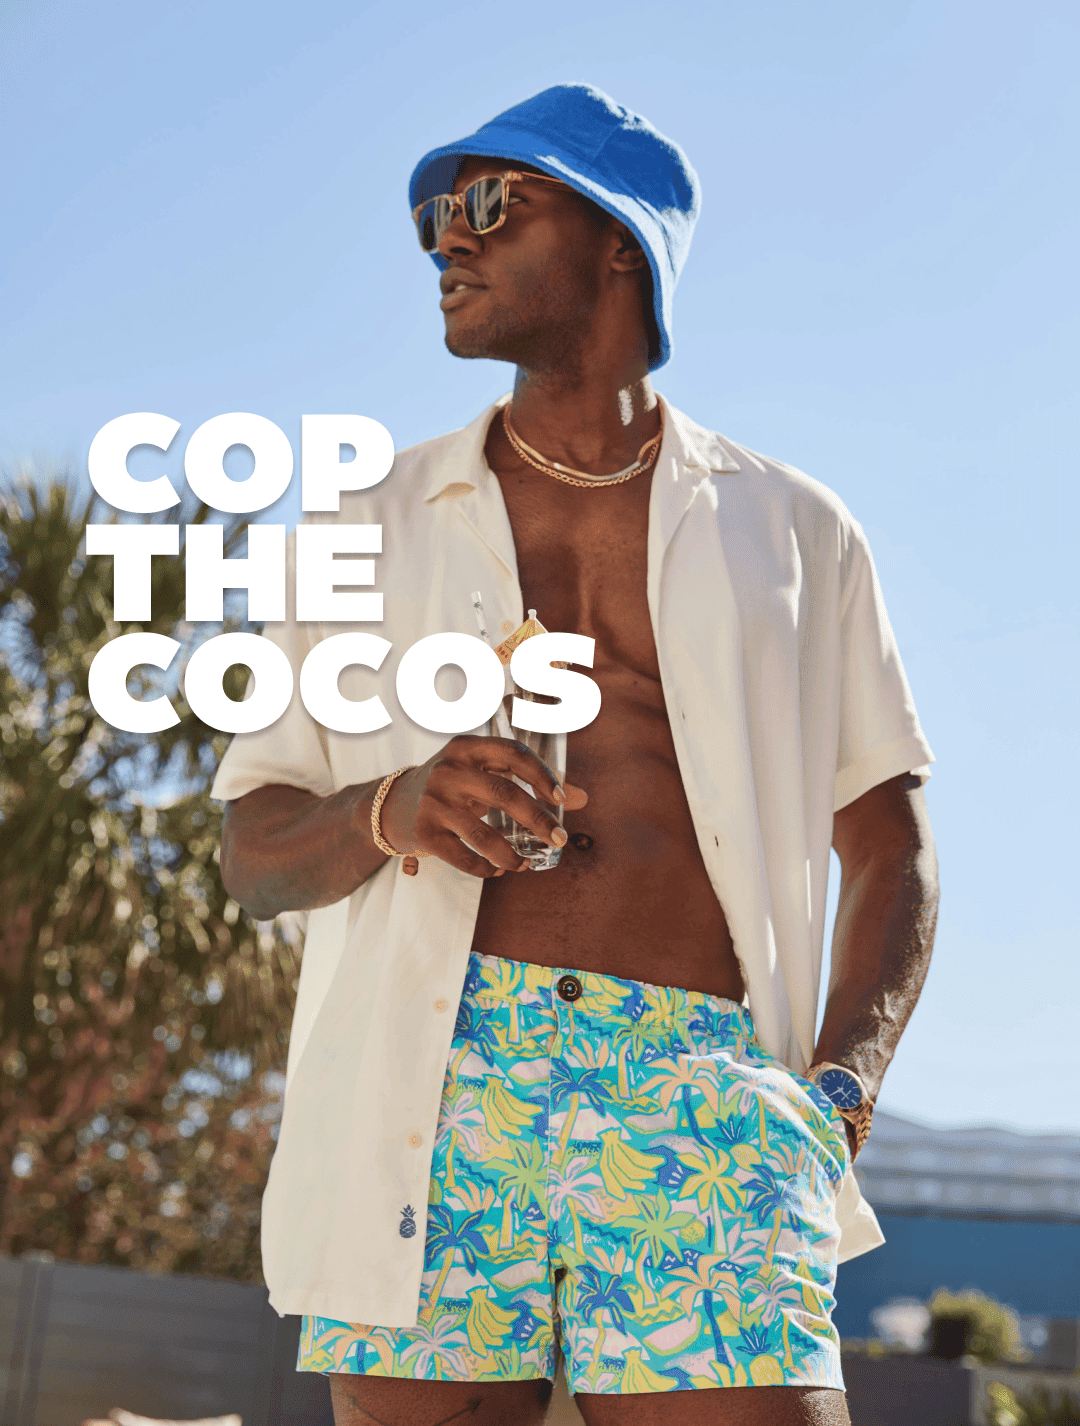 COP THE COCOS